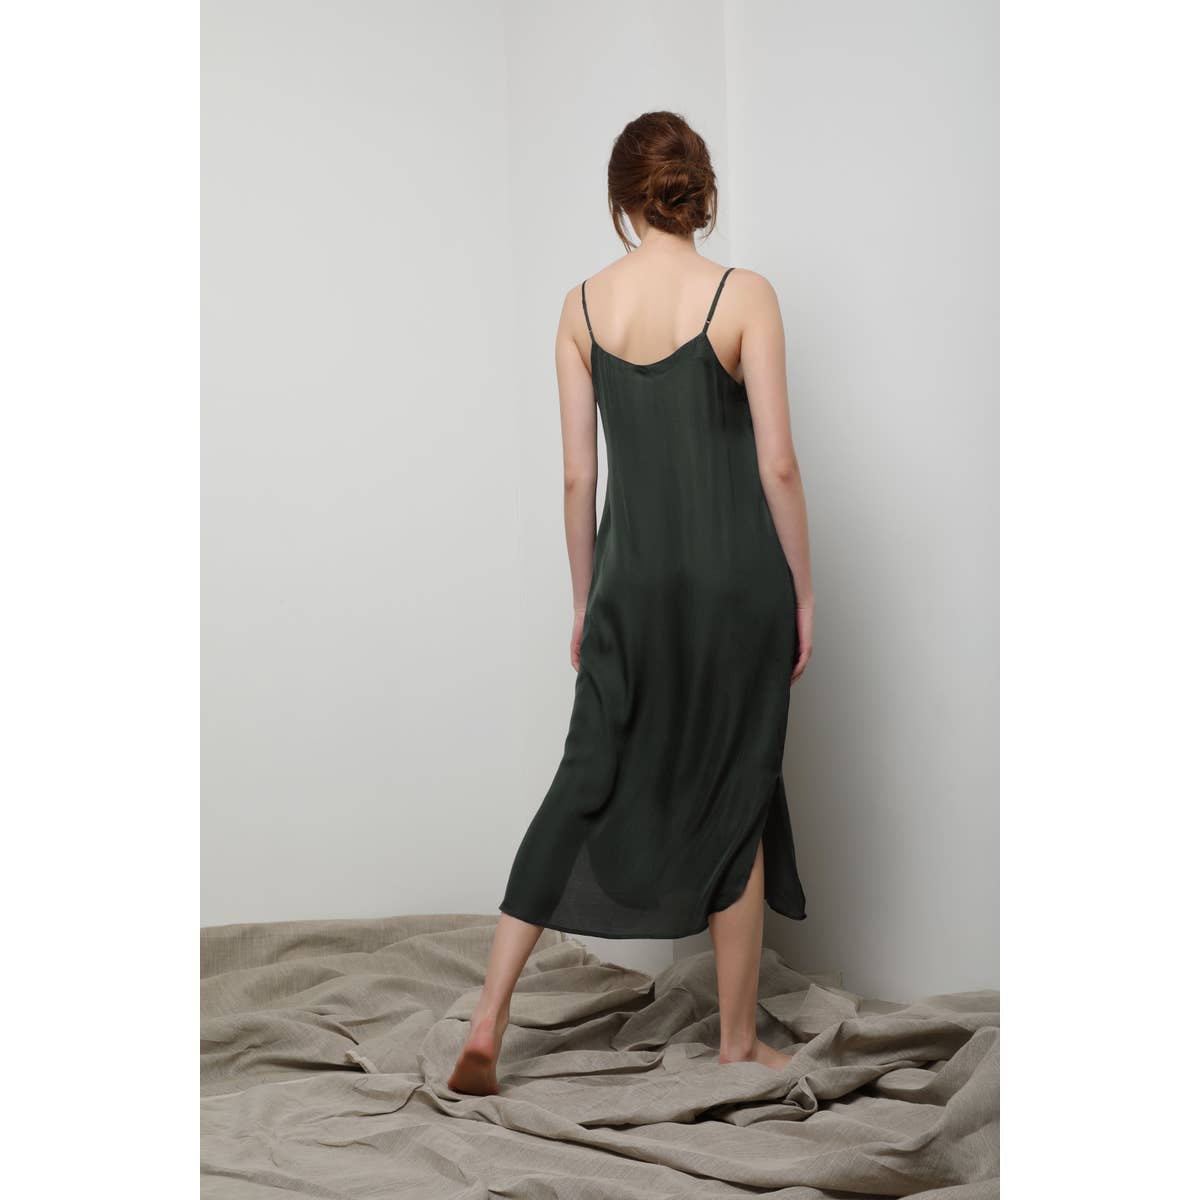 Easy Slip Dress - Olive Green